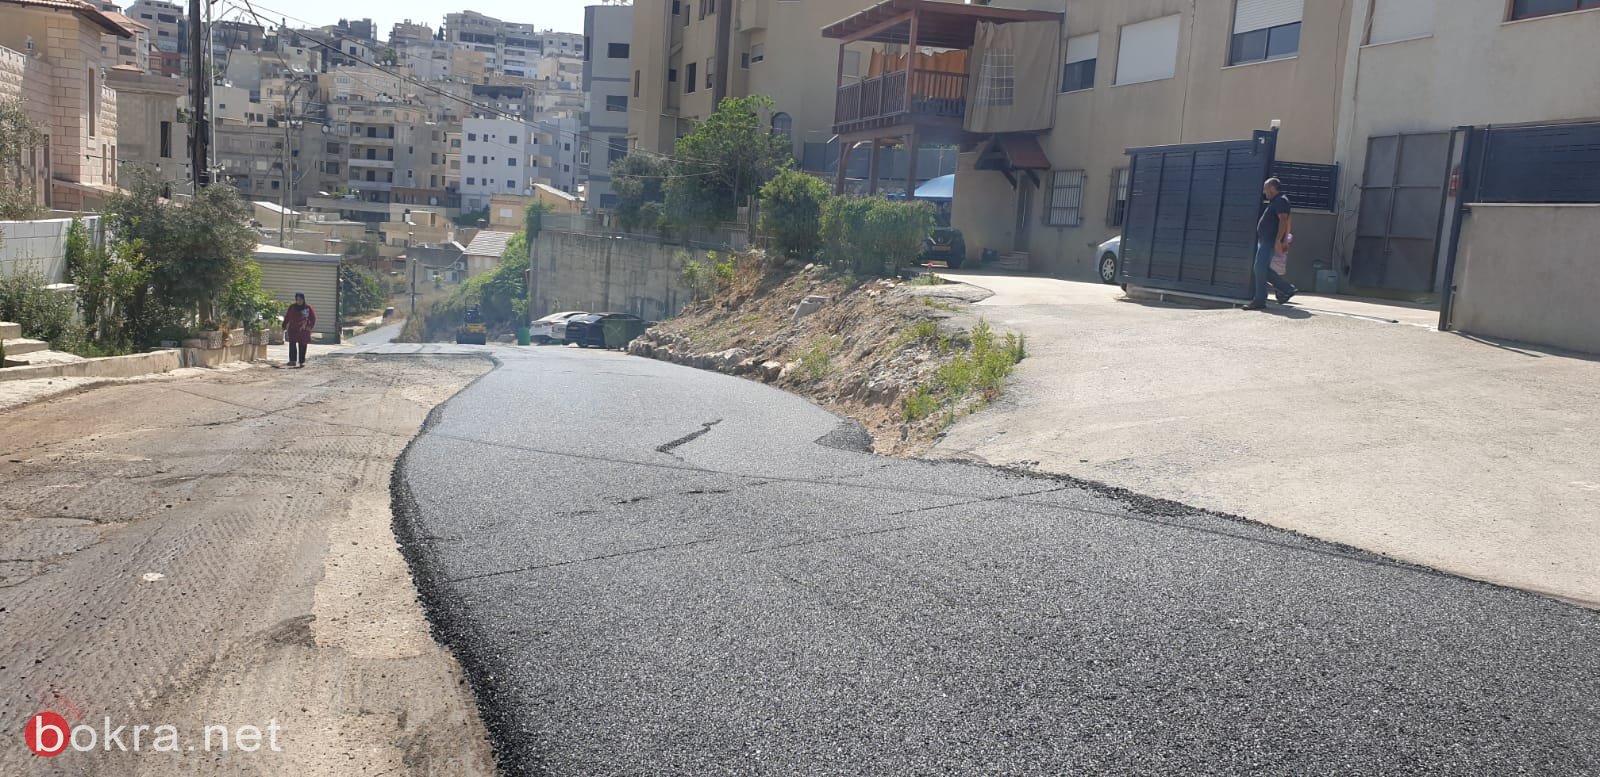 الناصرة: مشروع تعبيد شوارع المدينة يبدأ...حي البشارة يعبد اليوم-2